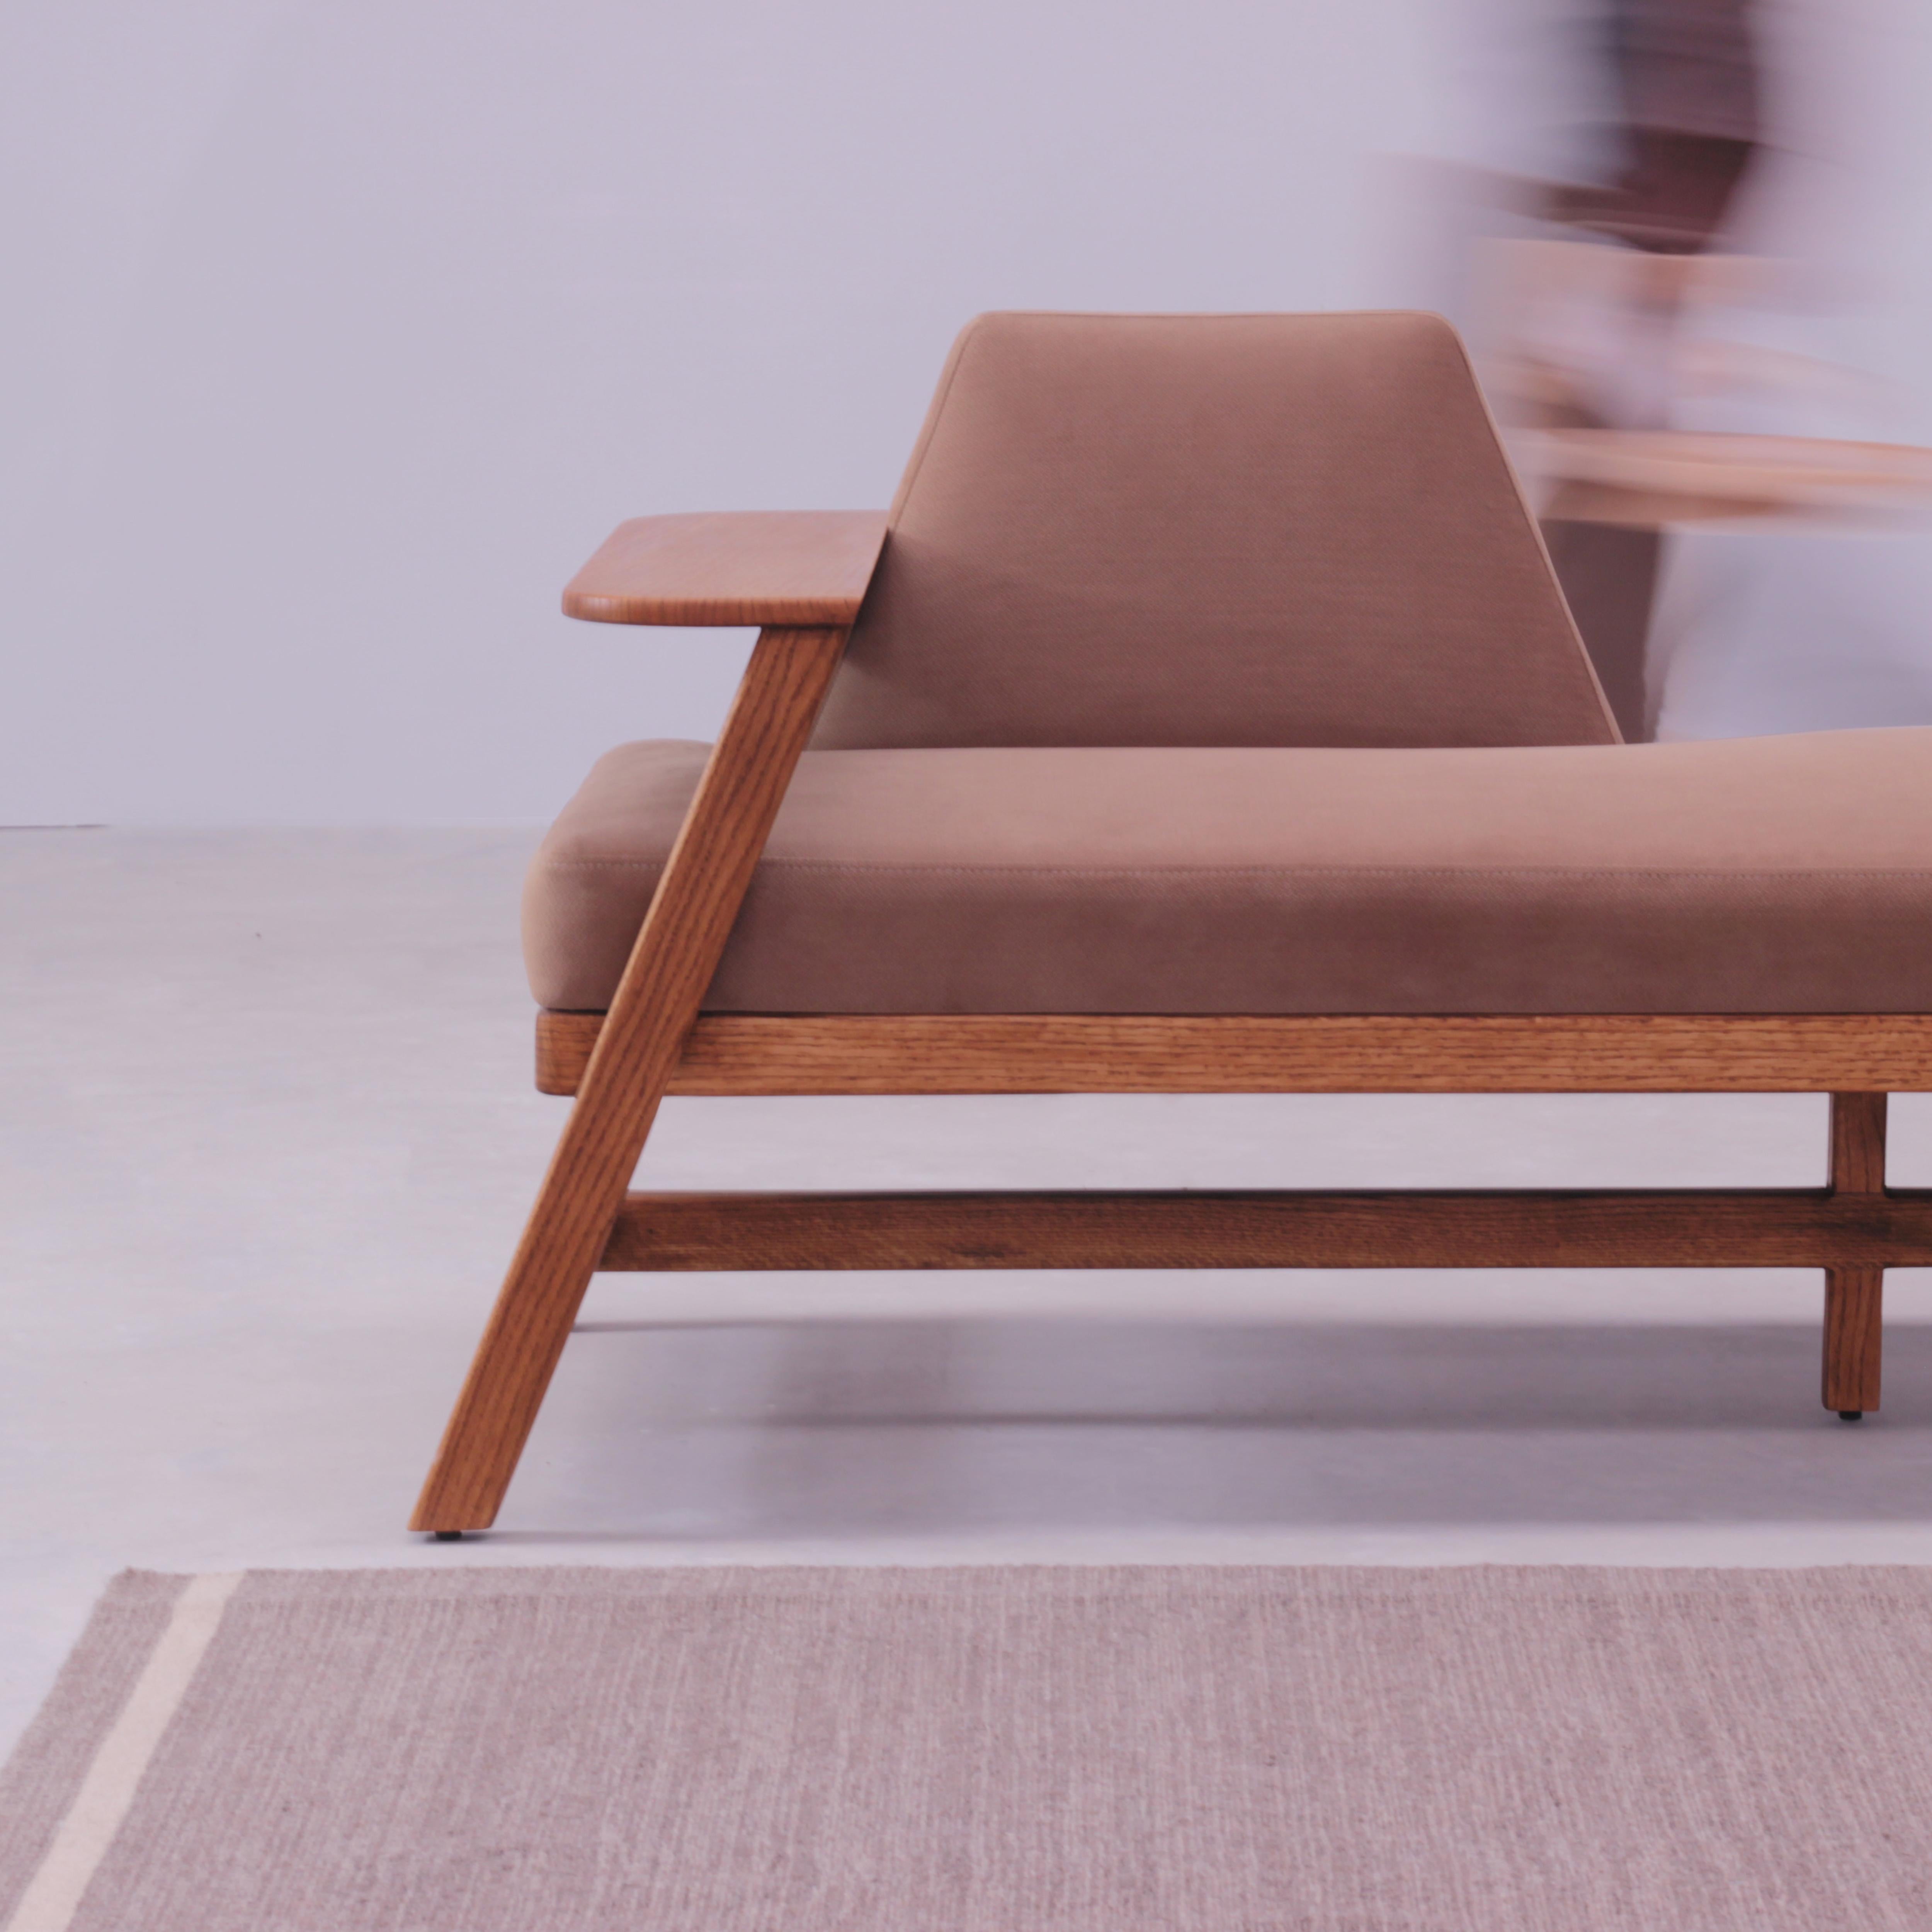 Die Sachi-Bank ist ein vielseitiges Möbelstück, das perfekt geeignet ist, um einen Hauch von Ruhe in Ihr Zuhause zu bringen. Er ist aus massiver amerikanischer Eiche gefertigt, mit feiner Polsterung und eleganten Messingdetails versehen und hat ein